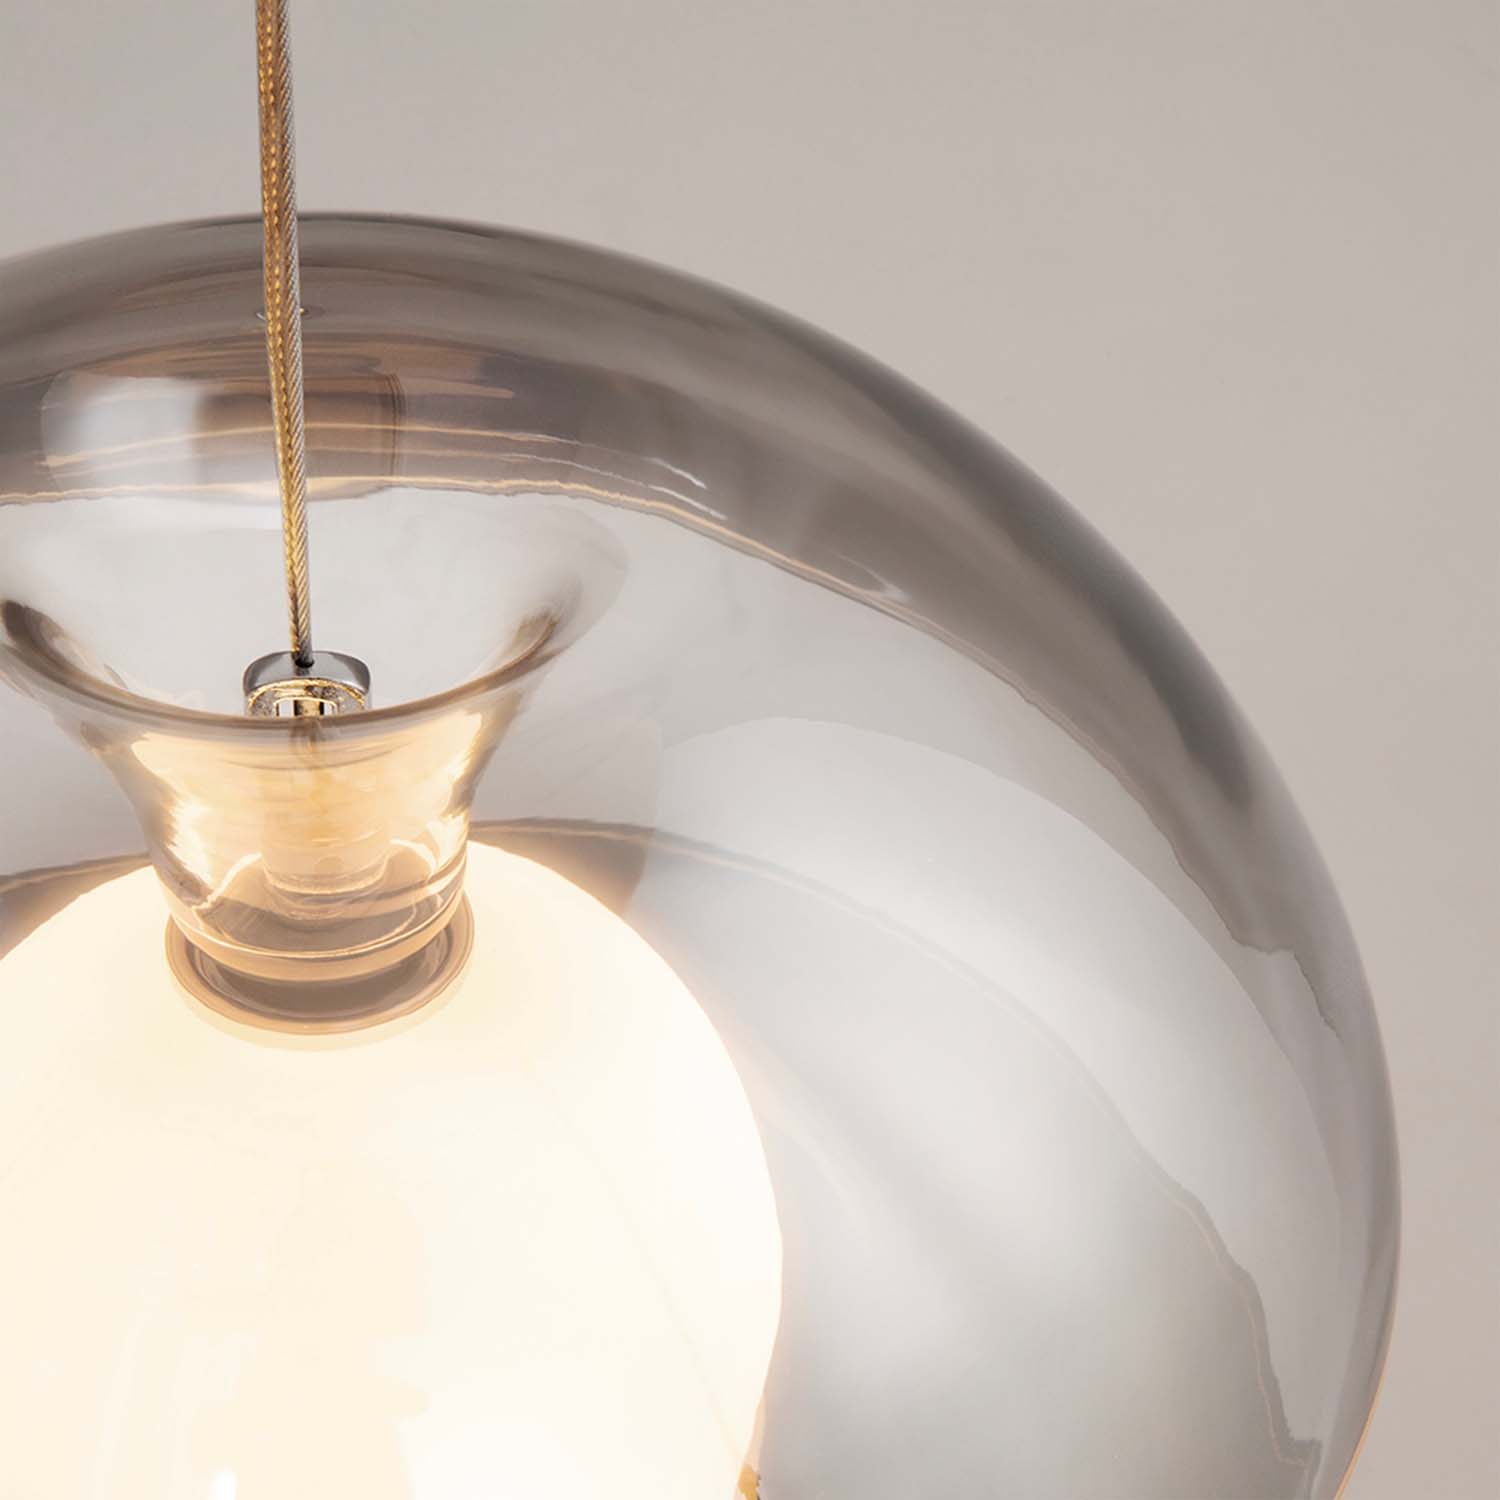 REBEL - Suspension design en forme de pomme, verre fumé LED intégrée